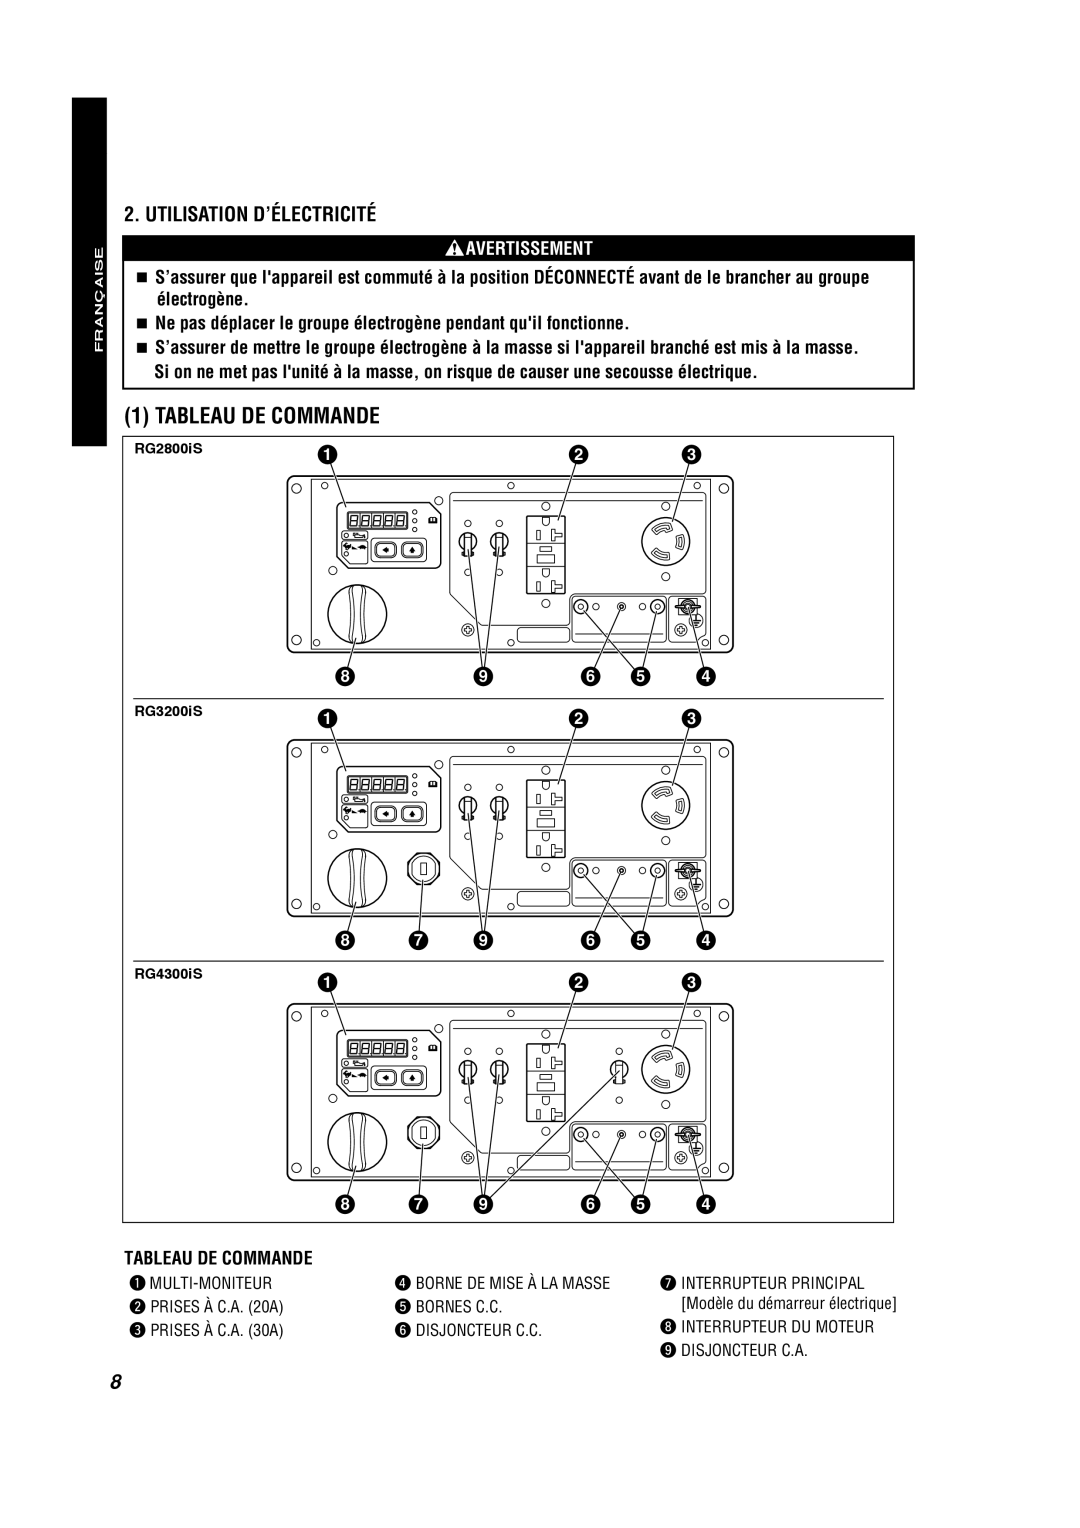 Subaru RG2800IS, RG4300IS manual Tableau De Commande, Utilisation D’Électricité, Française Française Español, Avertissement 